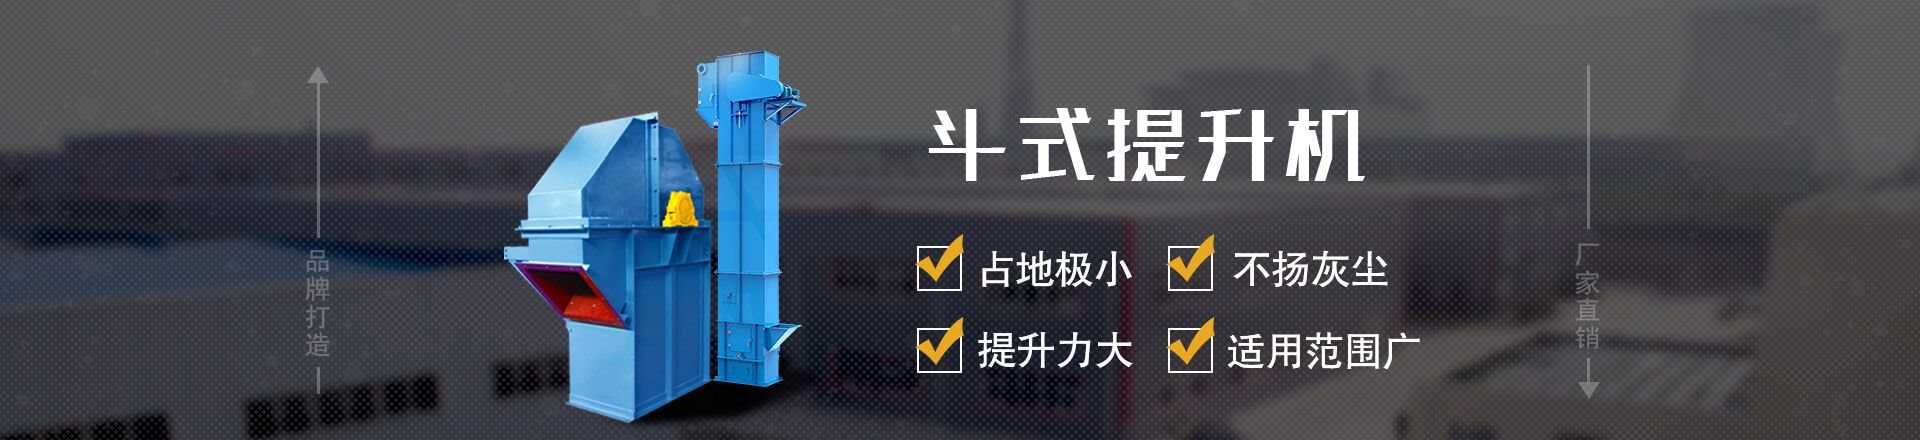 斗式提升专业制造生产厂家-郑州龙淮机械设备有限公司